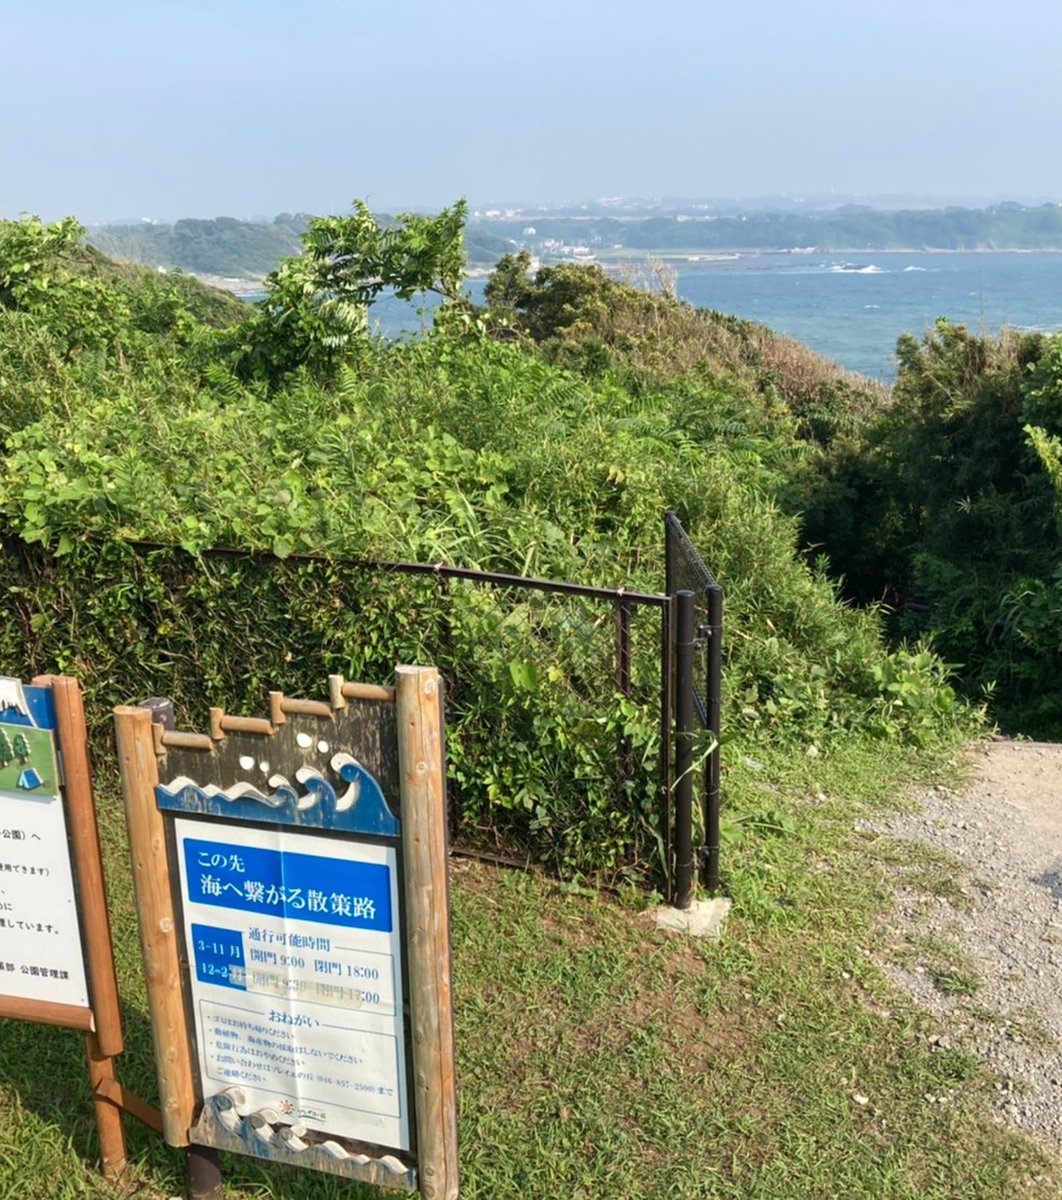 海へ繋がる散策路ゲート(ソレイユの丘)